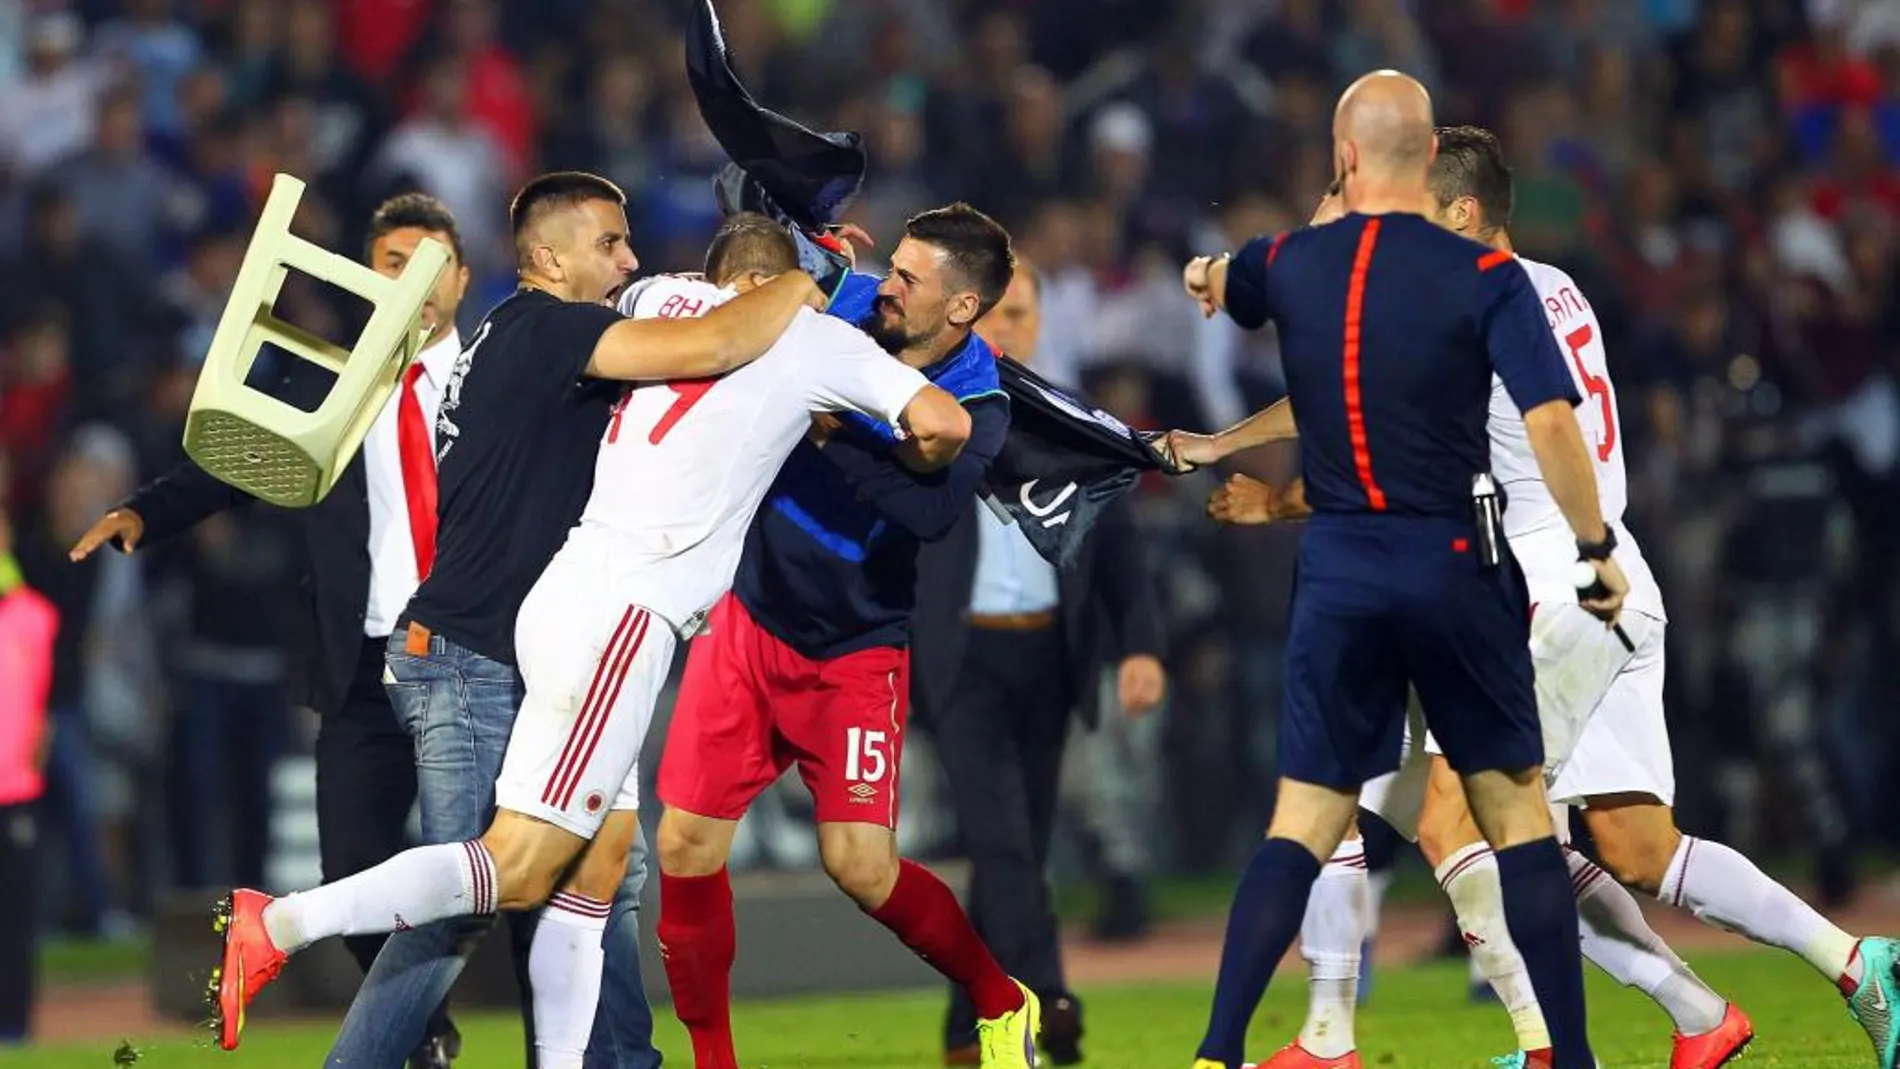 Jugadores de Albania y Serbia pelean durante el partido clasificatorio de la Eurocopa 2016 el martes 14 de octubre de 2014